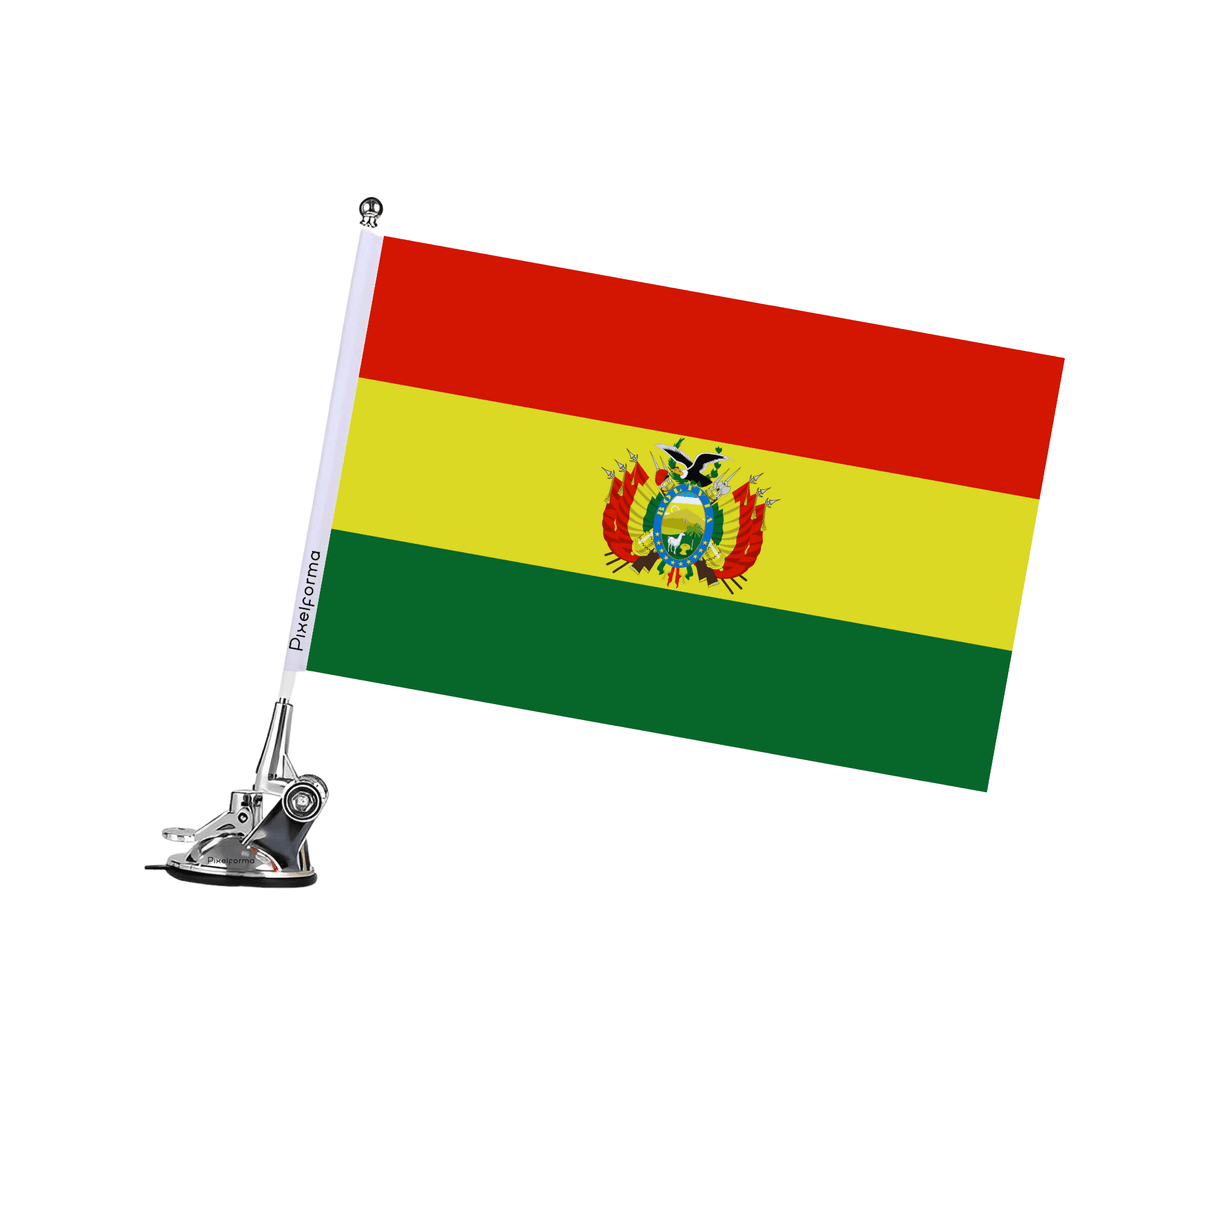 Mât à Ventouse Drapeau de la Bolivie - Pixelforma 